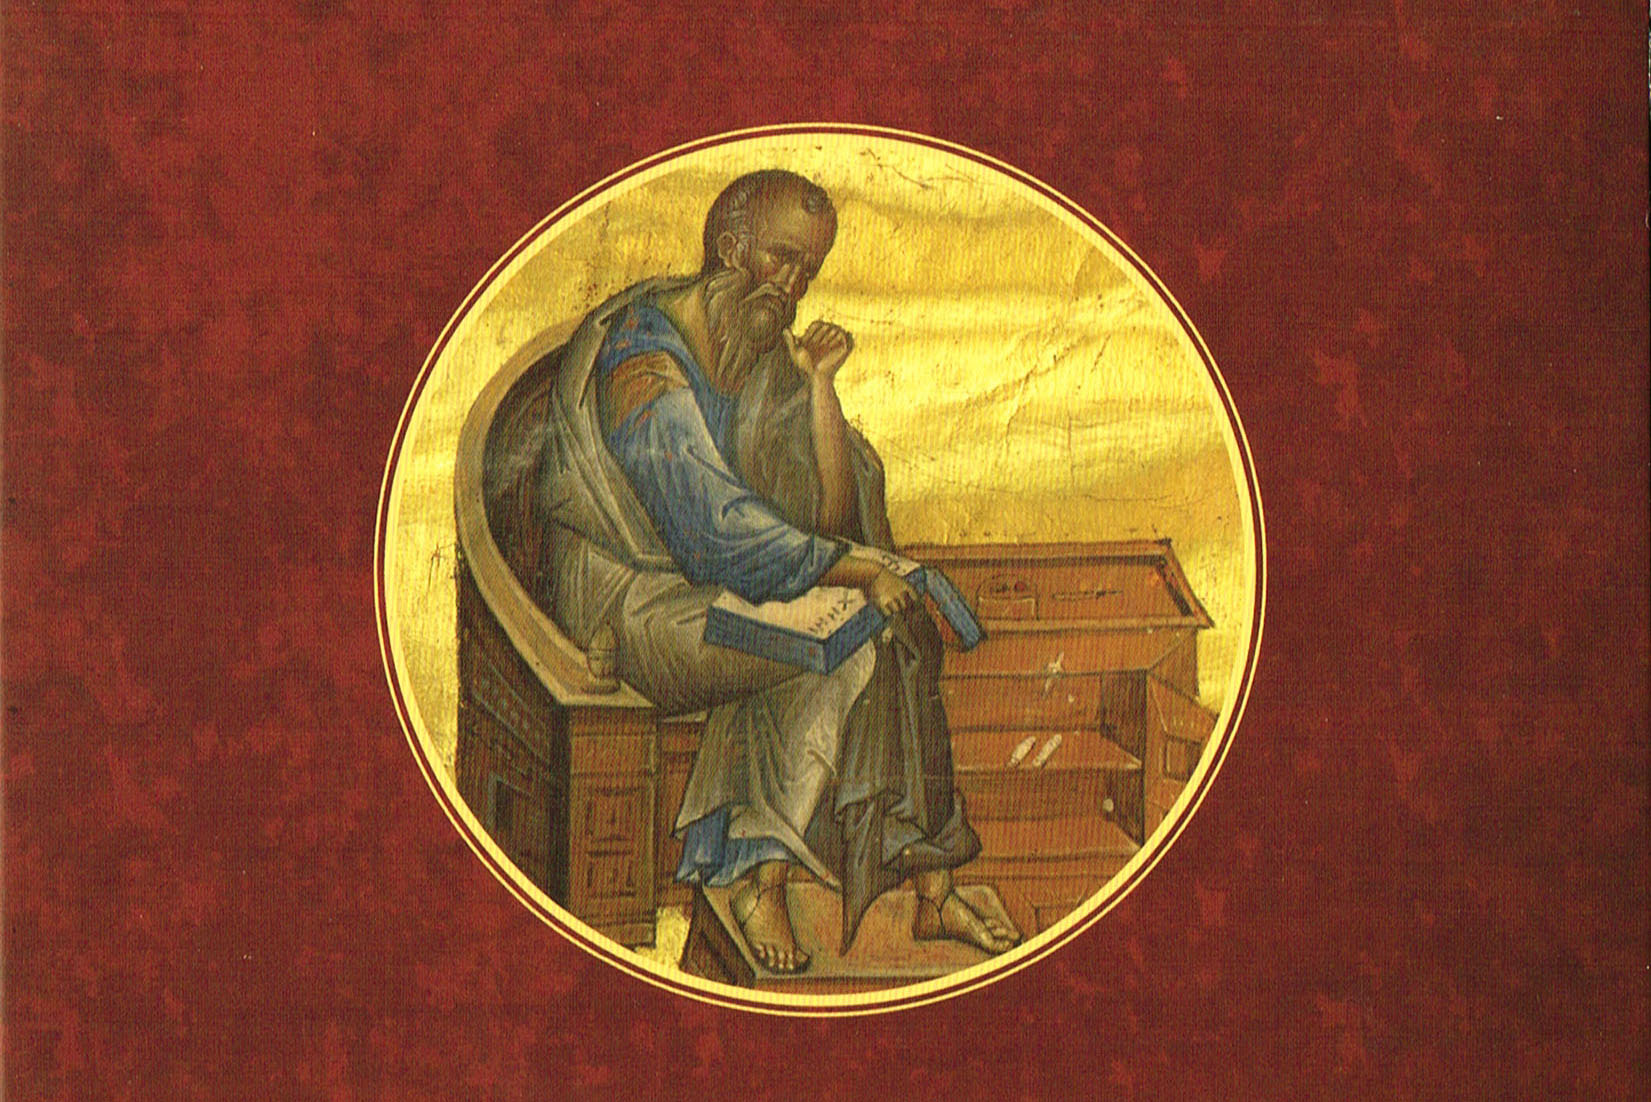 L’Evangile selon saint Jean lu par le métropolite Joseph: un nouveau CD audio publié par la Métropole roumaine